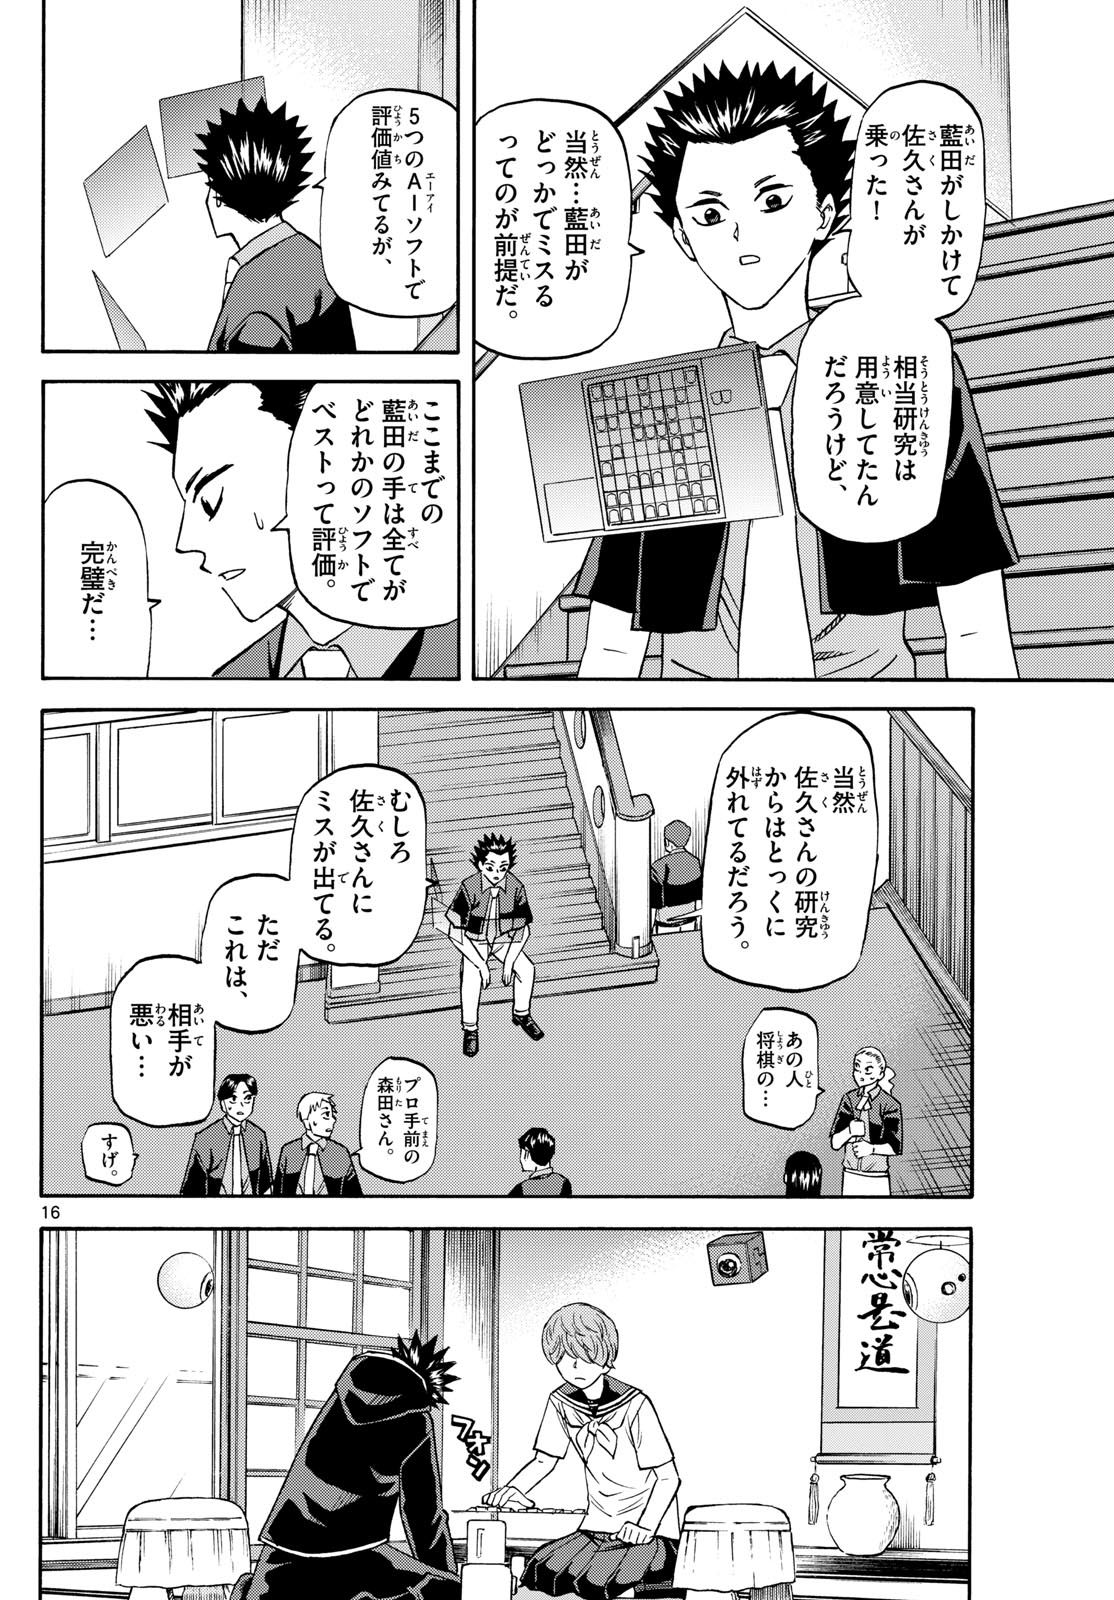 Tatsu to Ichigo - Chapter 191 - Page 16